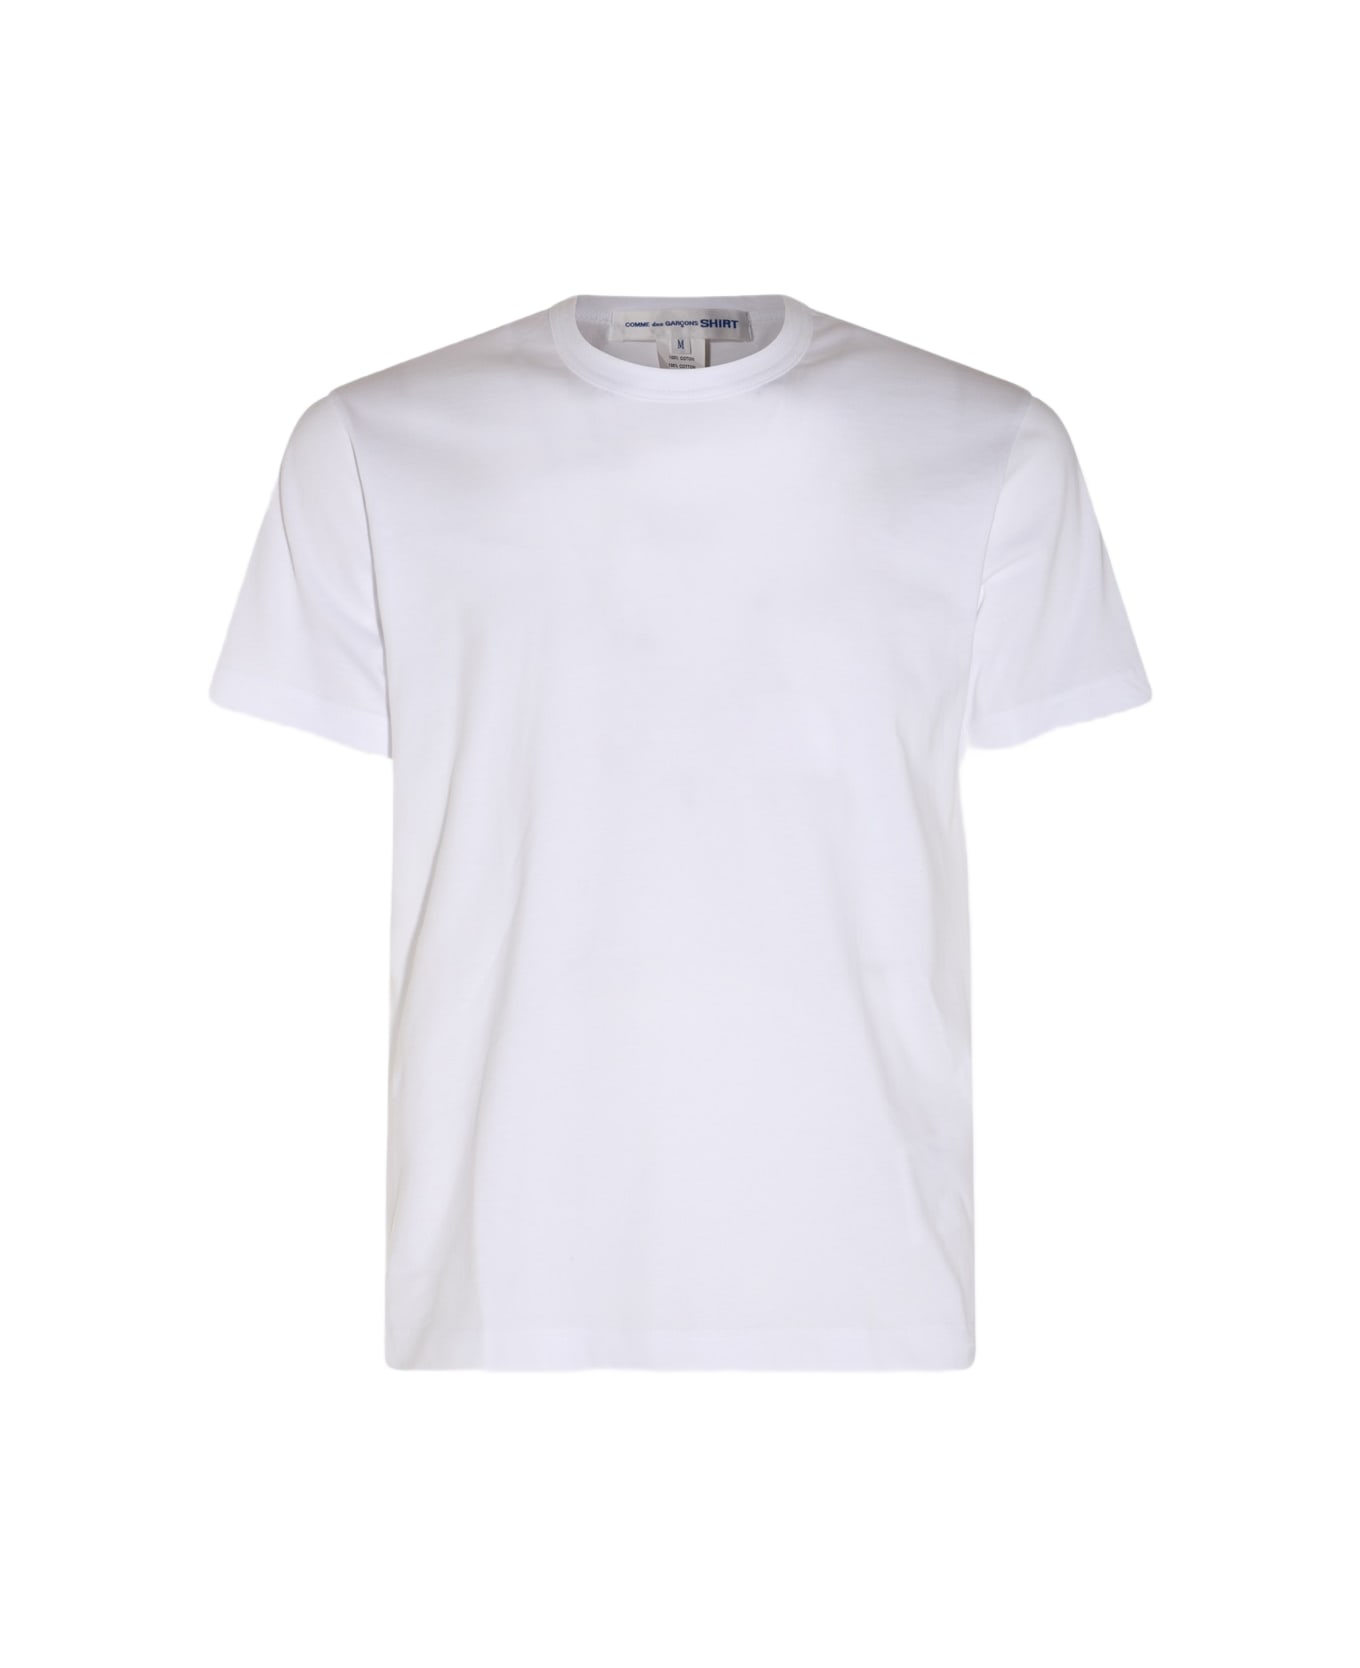 Comme des Garçons White Cotton T-shirt - TOP GREY